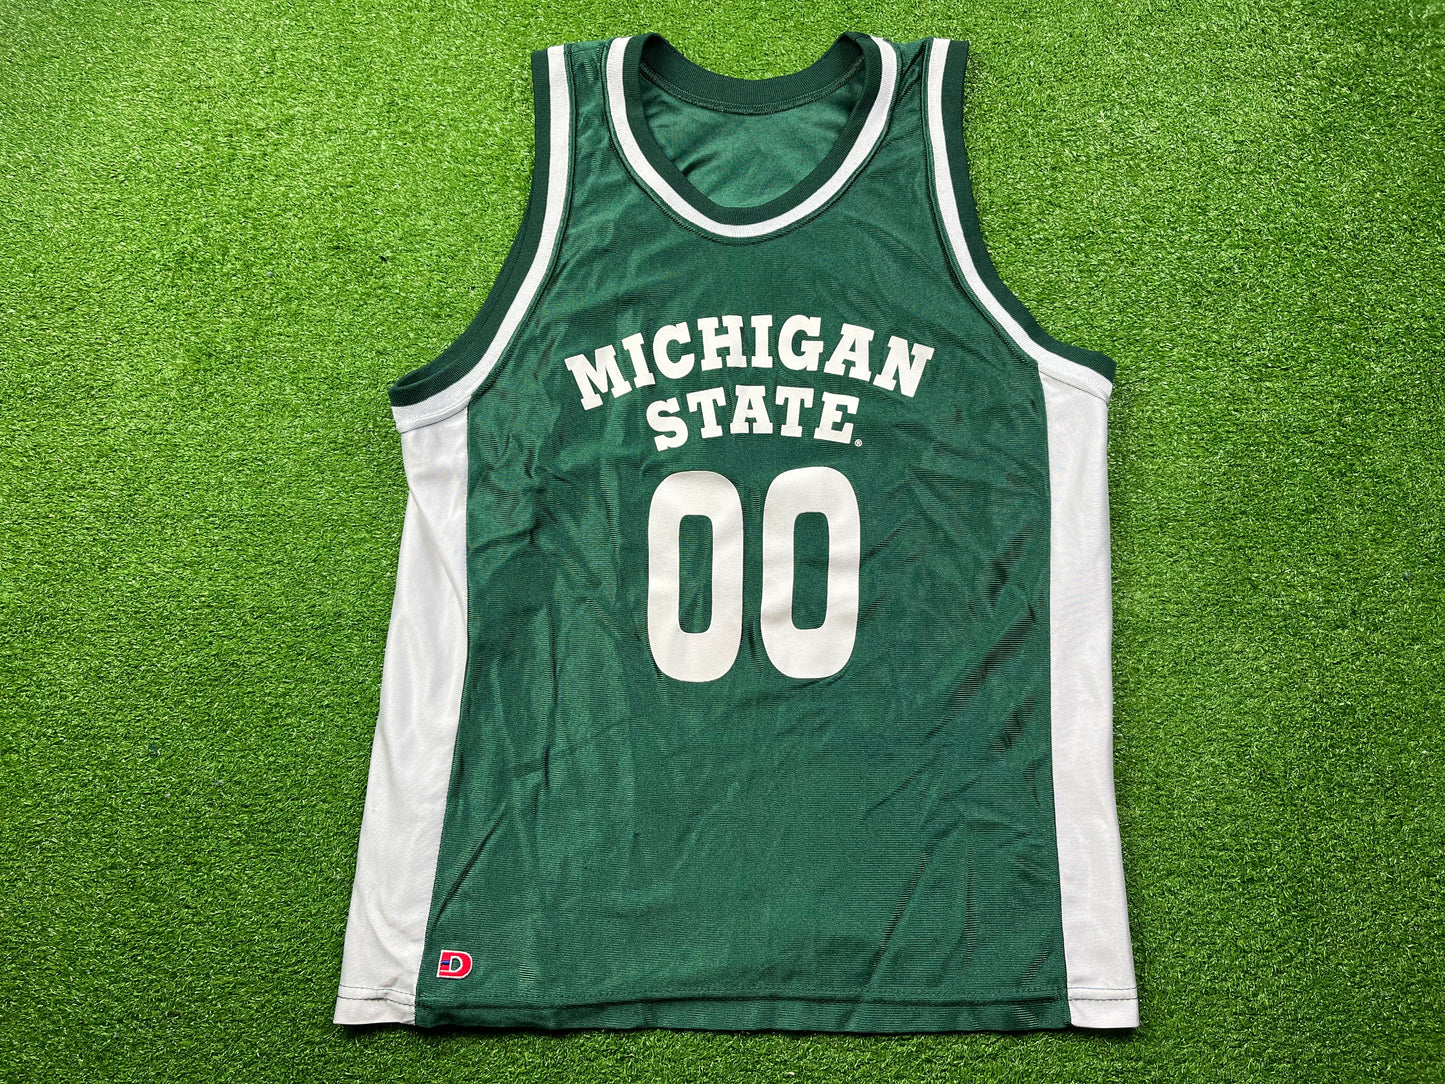 Michigan State #00 Basketball Jersey